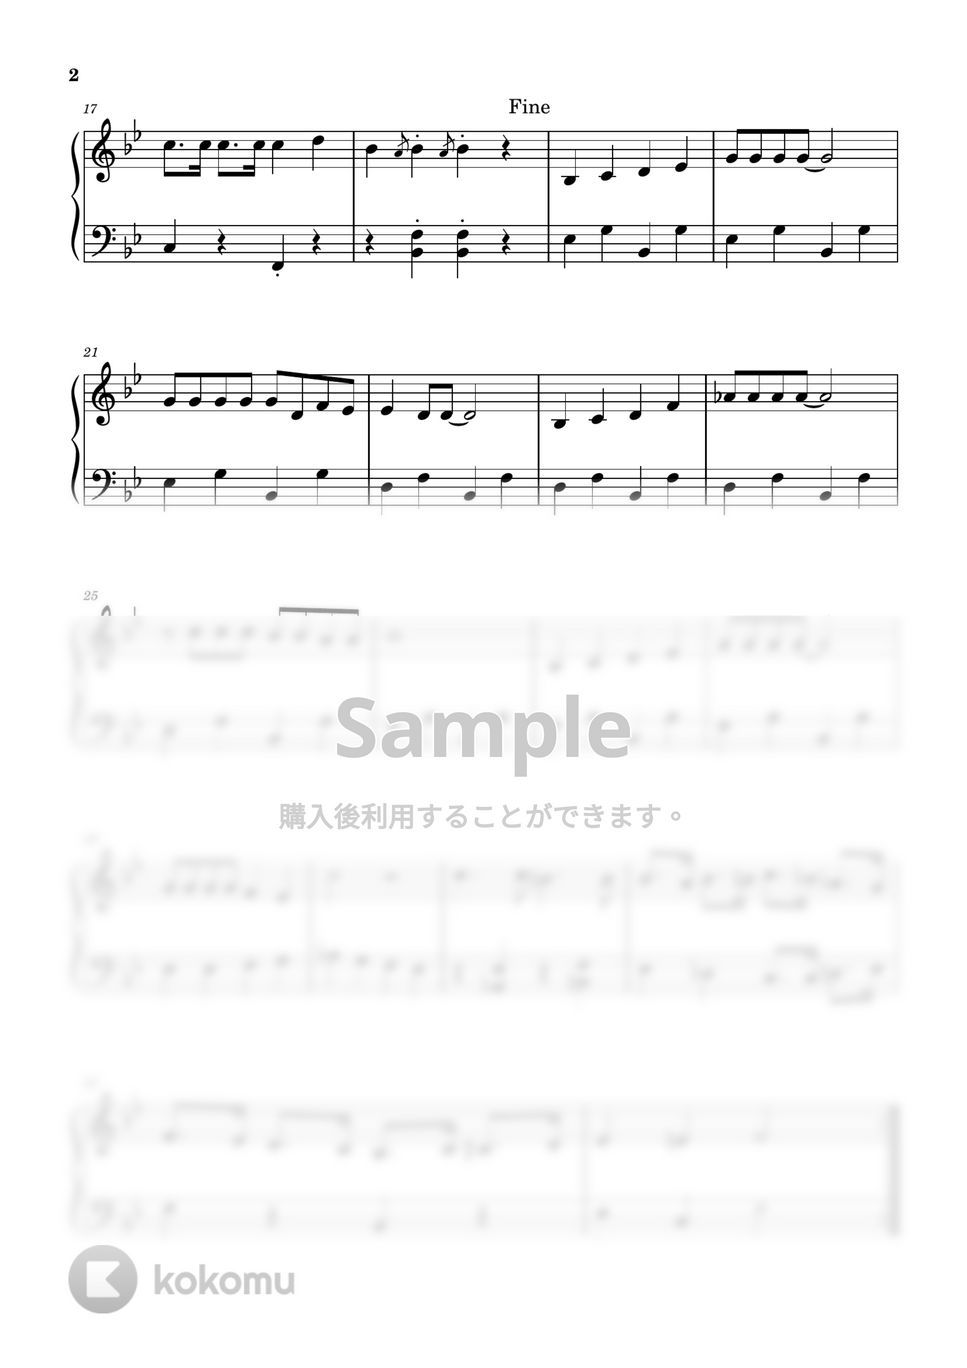 宮川彬良 - カービィマーチ (ピアノ初級ソロ) by pianon楽譜